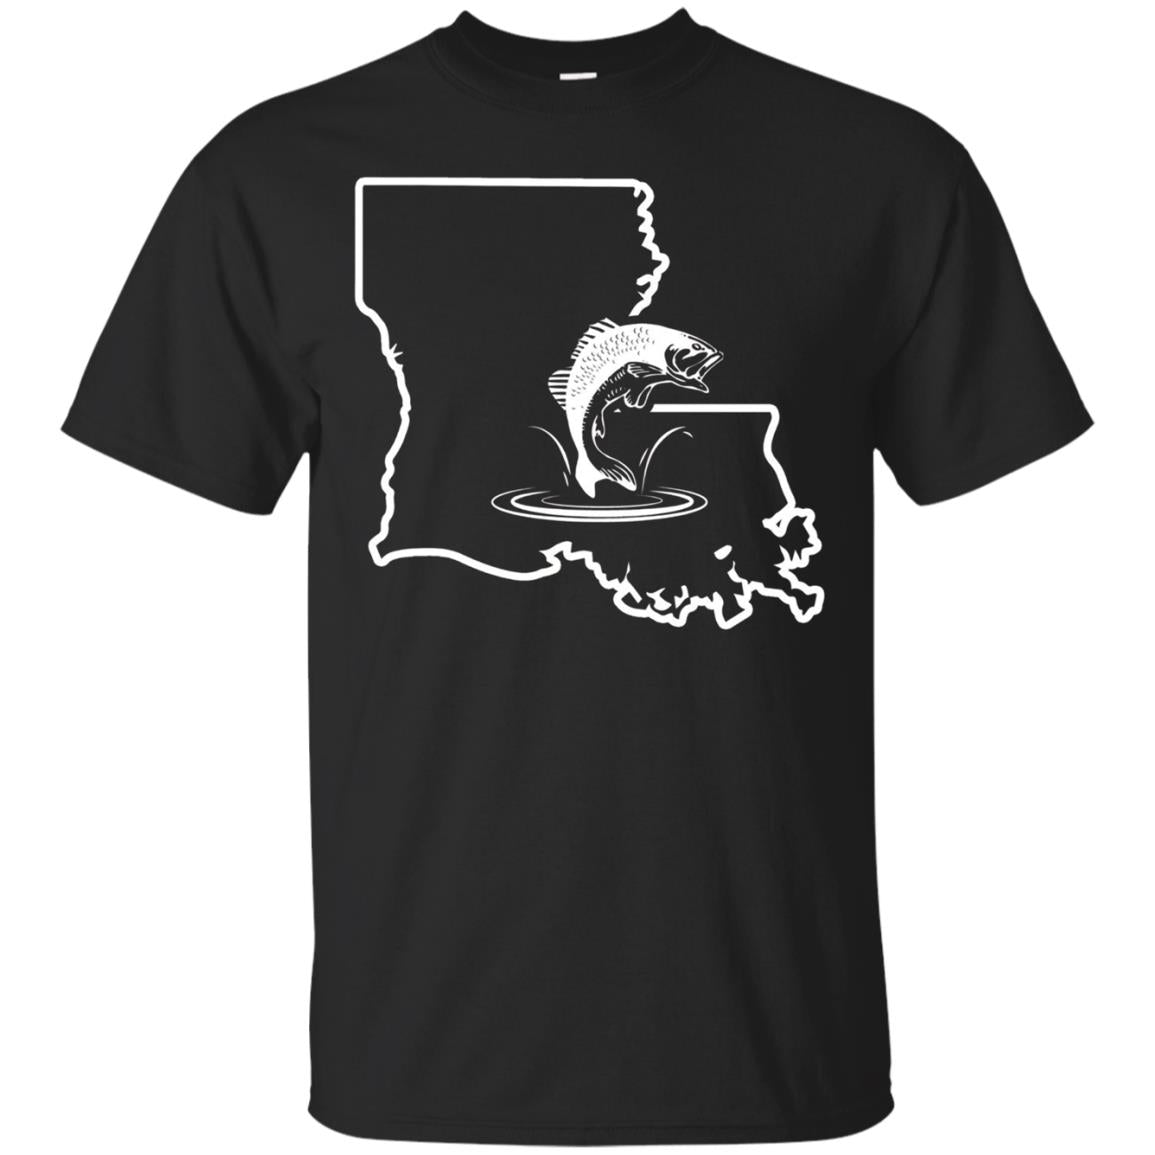 Bass Fishing Apparel Louisiana Bass Fishing Gift Shirt